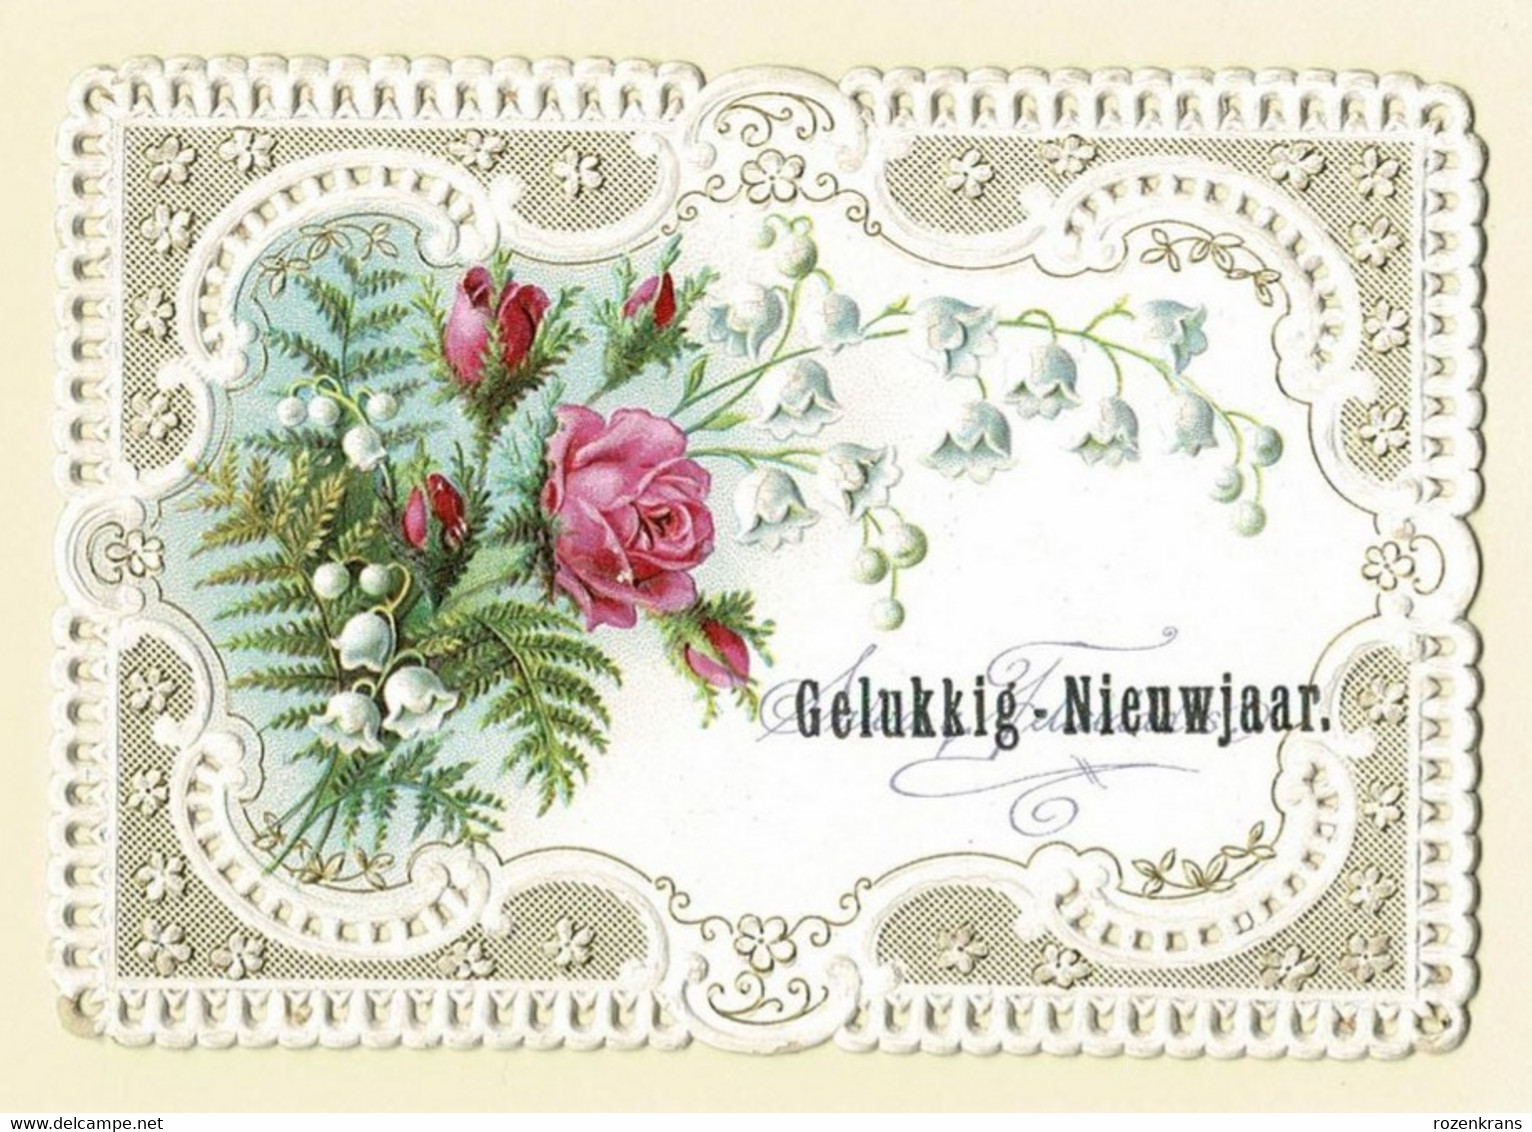 Bonne Annee Gelukkig Nieuwjaar Carte Dentellee Gaufree Embossed Canivet Fleurs Flowers Fam Mutsaers Tilburg - Fiori